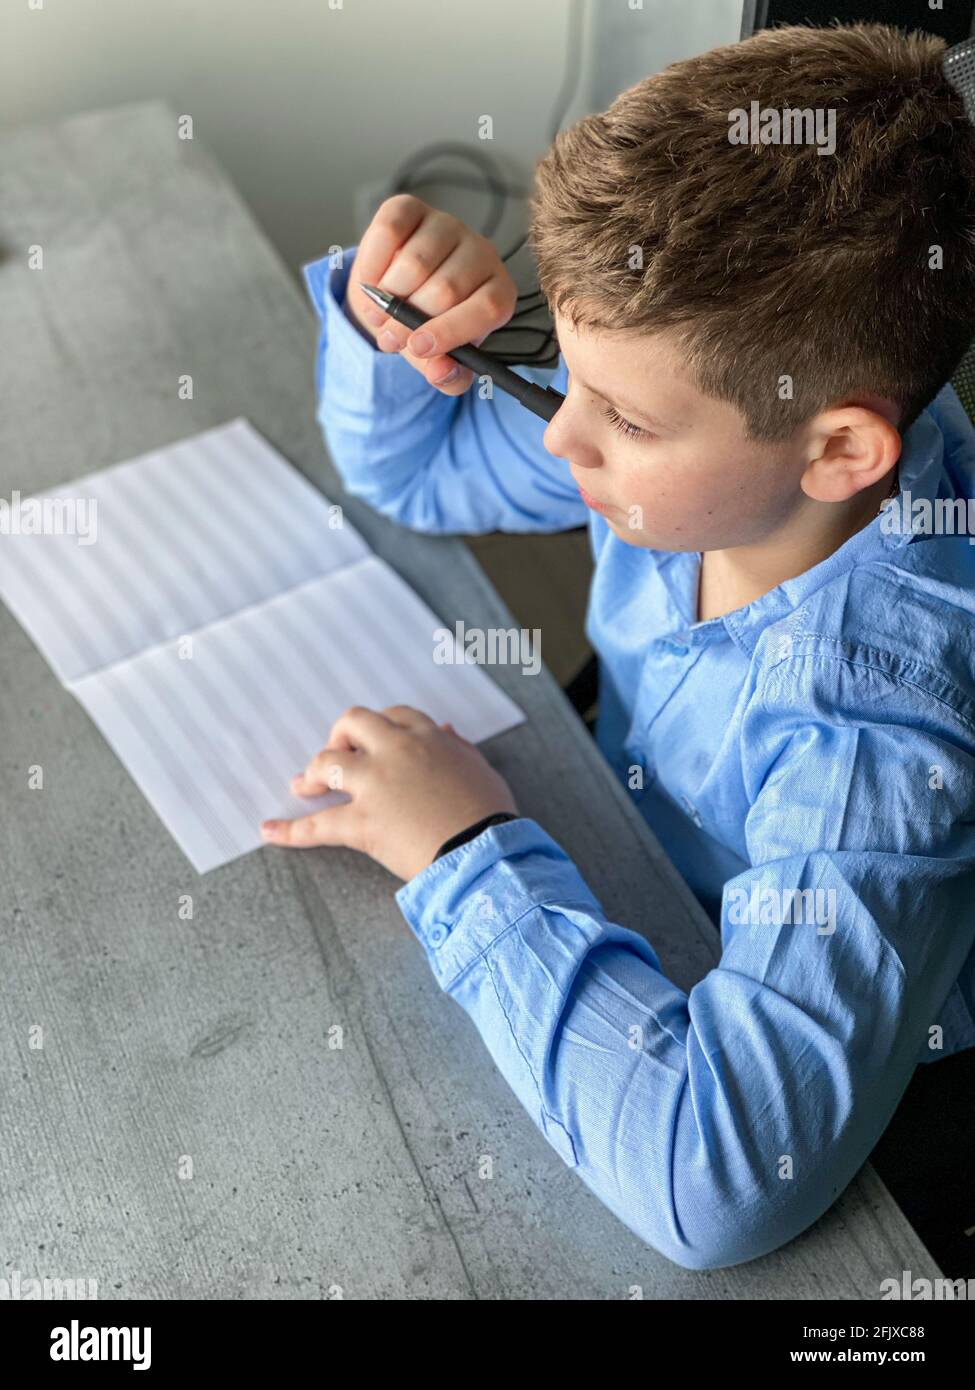 Junge in einem blauen Hemd schaut aus dem Fenster Stockfoto